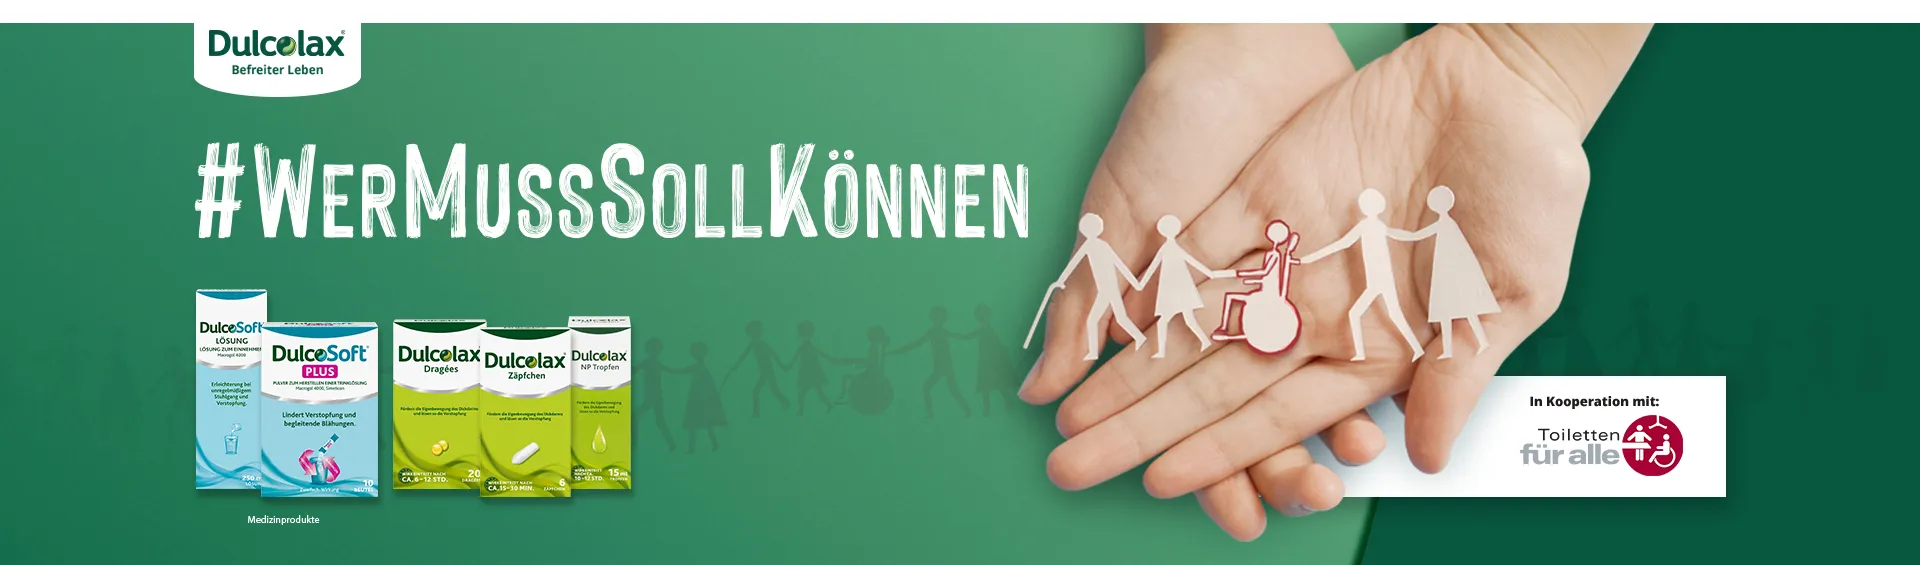 Bannerbild mit großem Text #WerMussenSollKönnen, Dulcolax® und DulcoSoft® Produktsortiment und hände, die sorgfältig Papierbilder von Menschen halten.